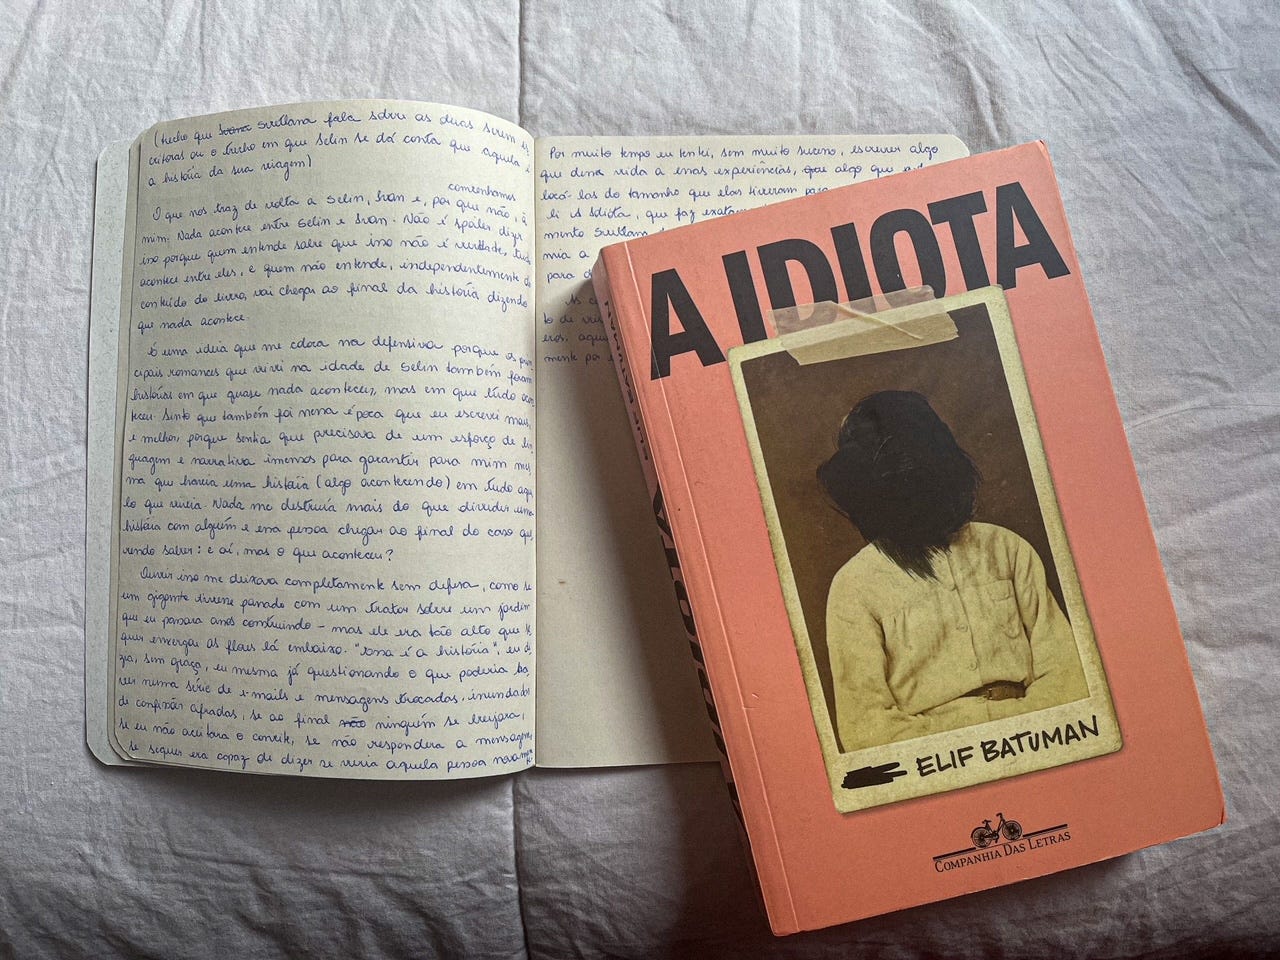 Caderno aberto sobre fundo lilás, com o primeiro rascunho desse texto, ao lado do livro fechado